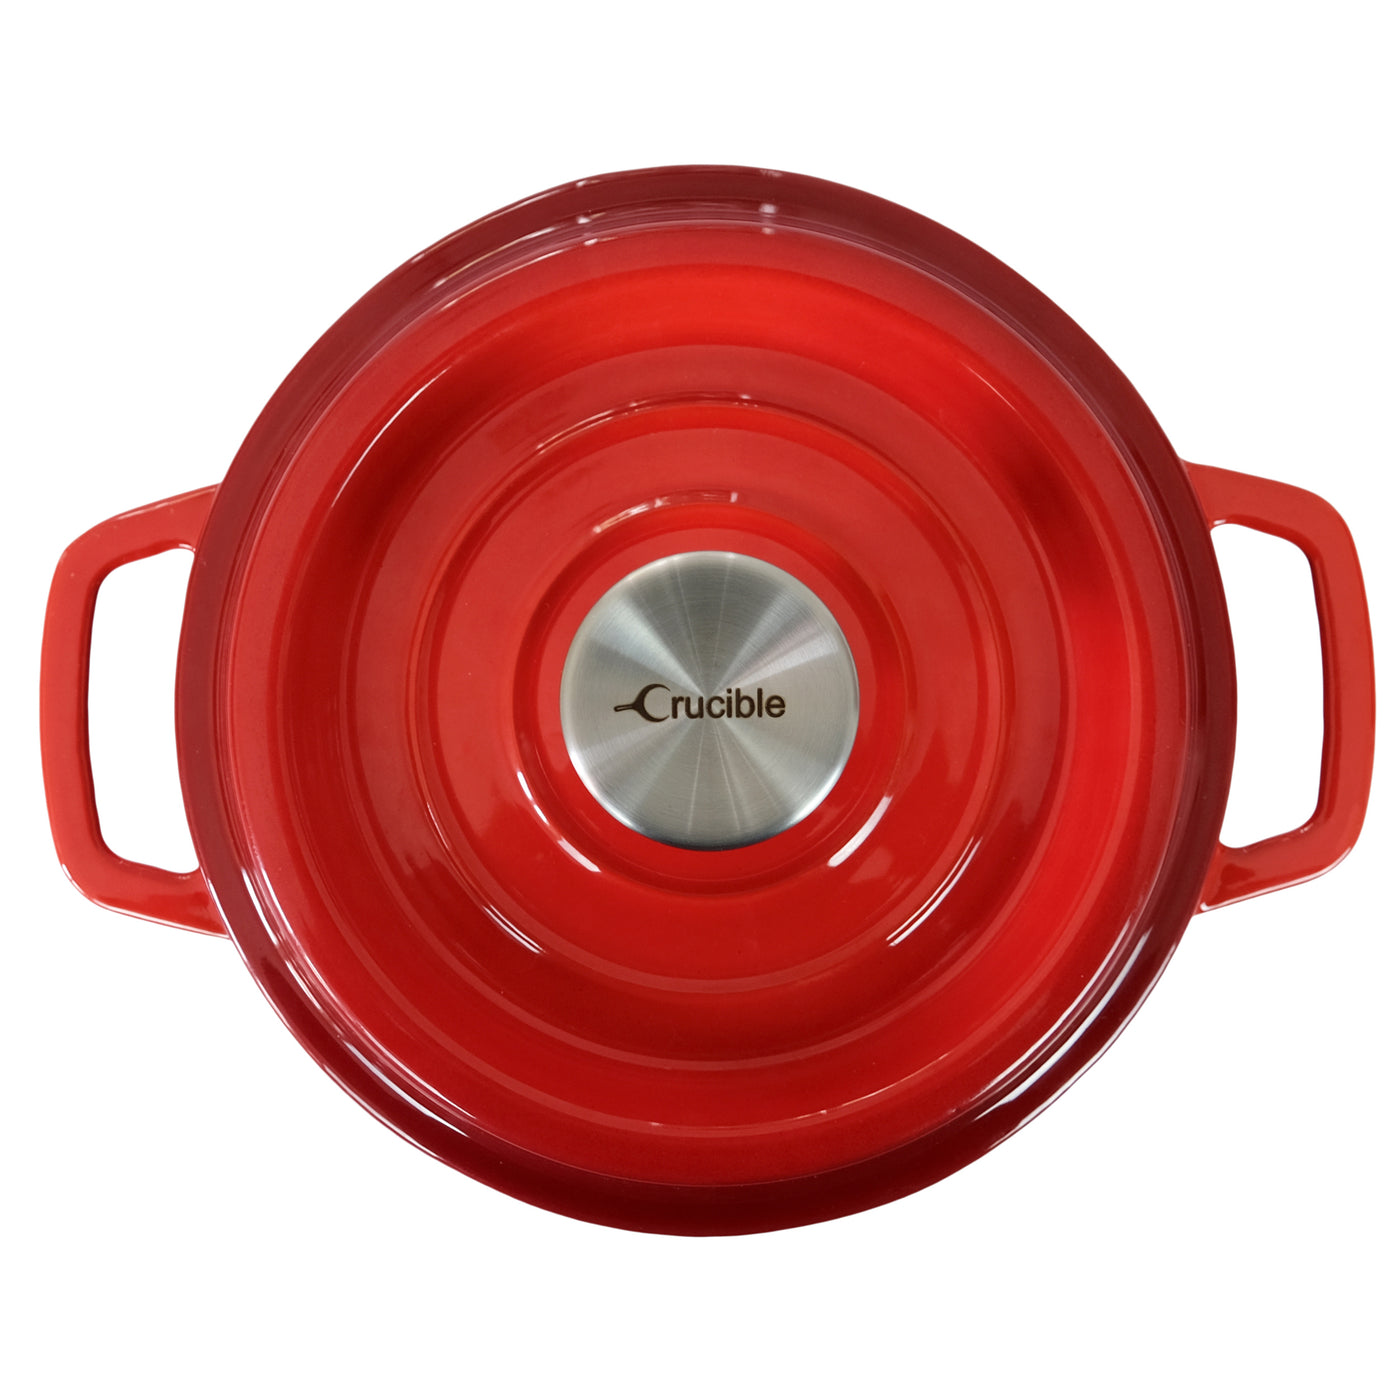 Emaillierter Gusseisentopf <tc>Dutch Oven</tc> (7,87 Zoll / 20 cm Durchmesser), Auflaufform – rund, rot